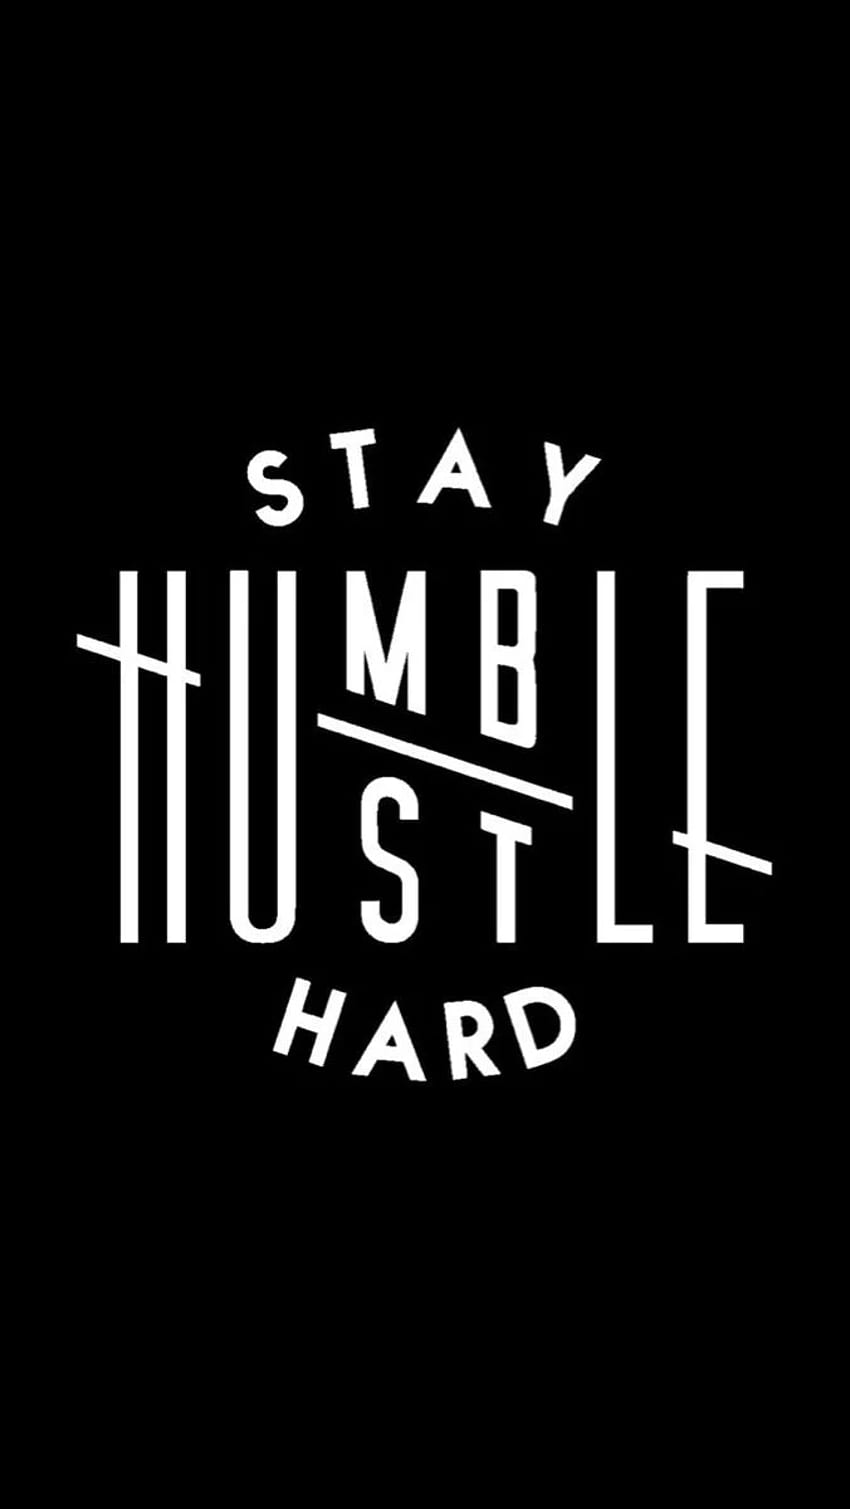 若い起業家の育成を支援します。 Humble quotes, Stay humble quotes, Hustle quotes, Stay Humble Hustle ハード HD電話の壁紙